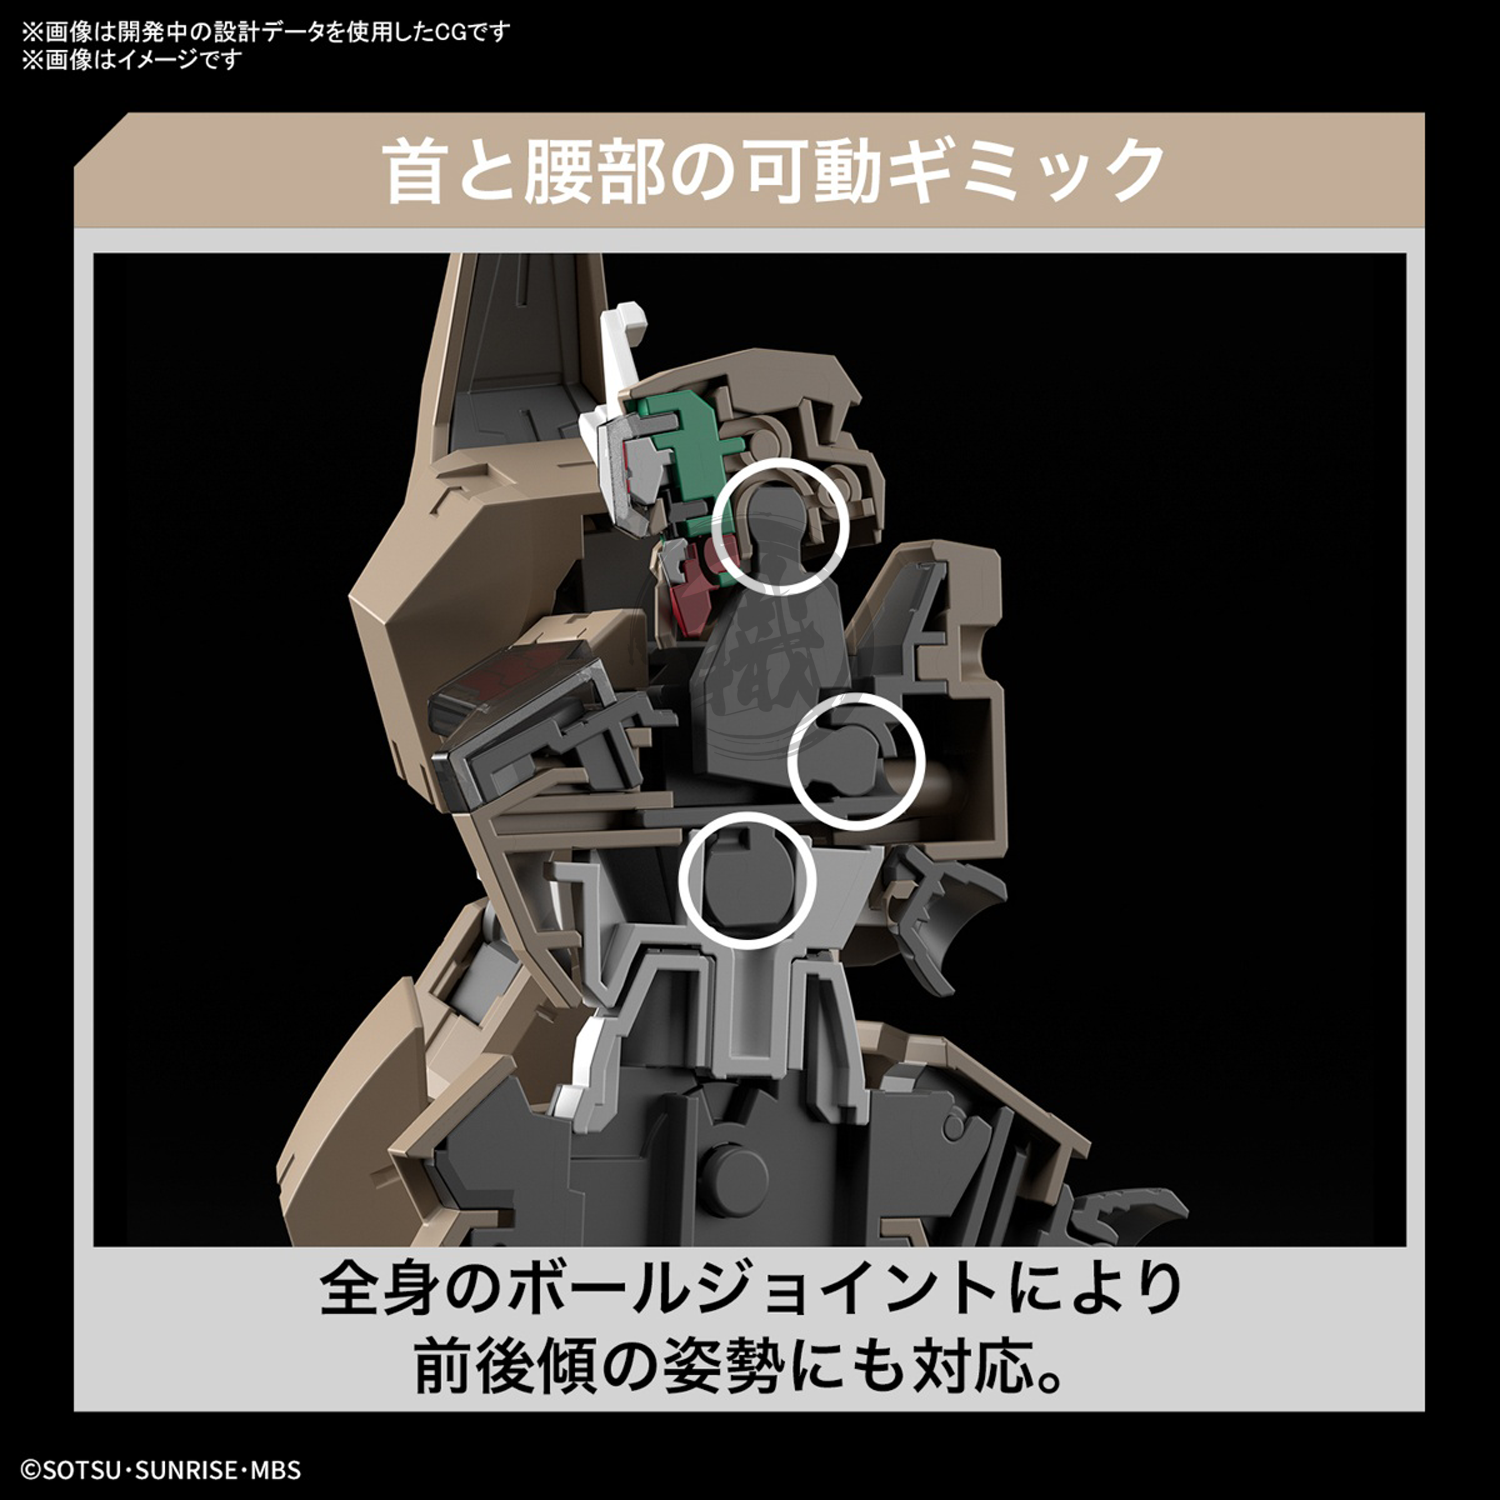 HG Gundam Lfrith Thorn - ShokuninGunpla